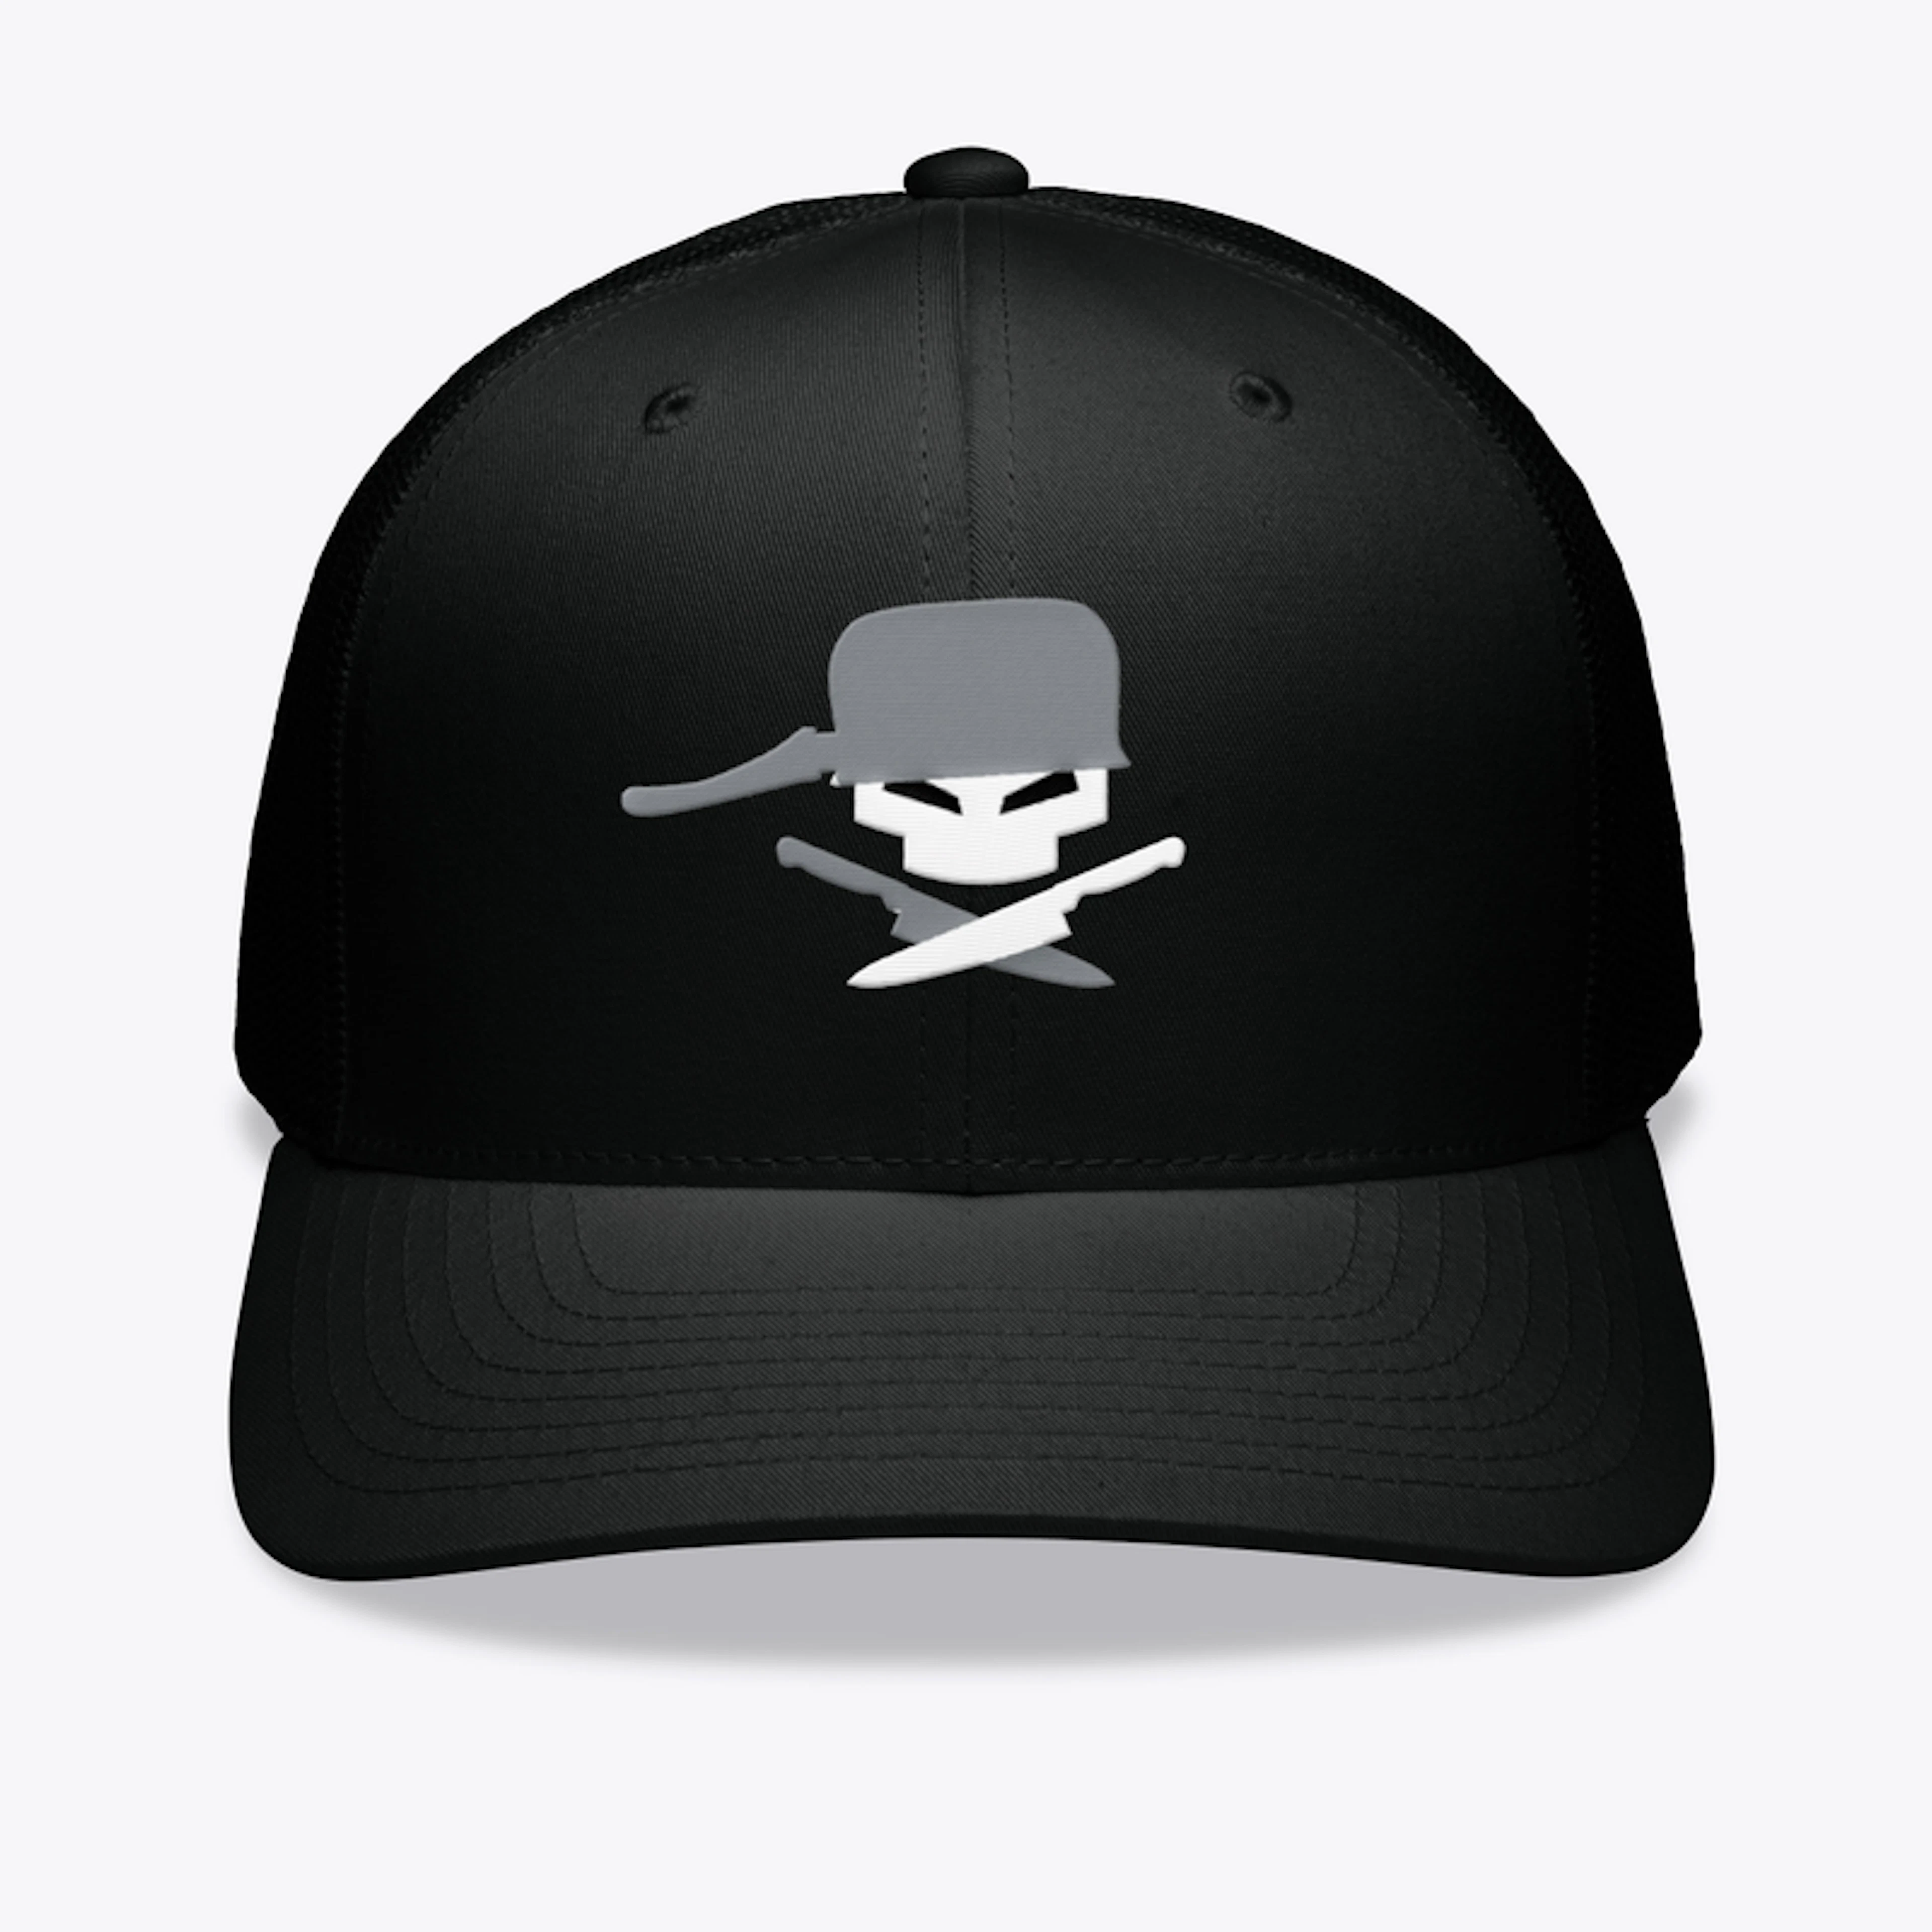 EMT logo - Hats